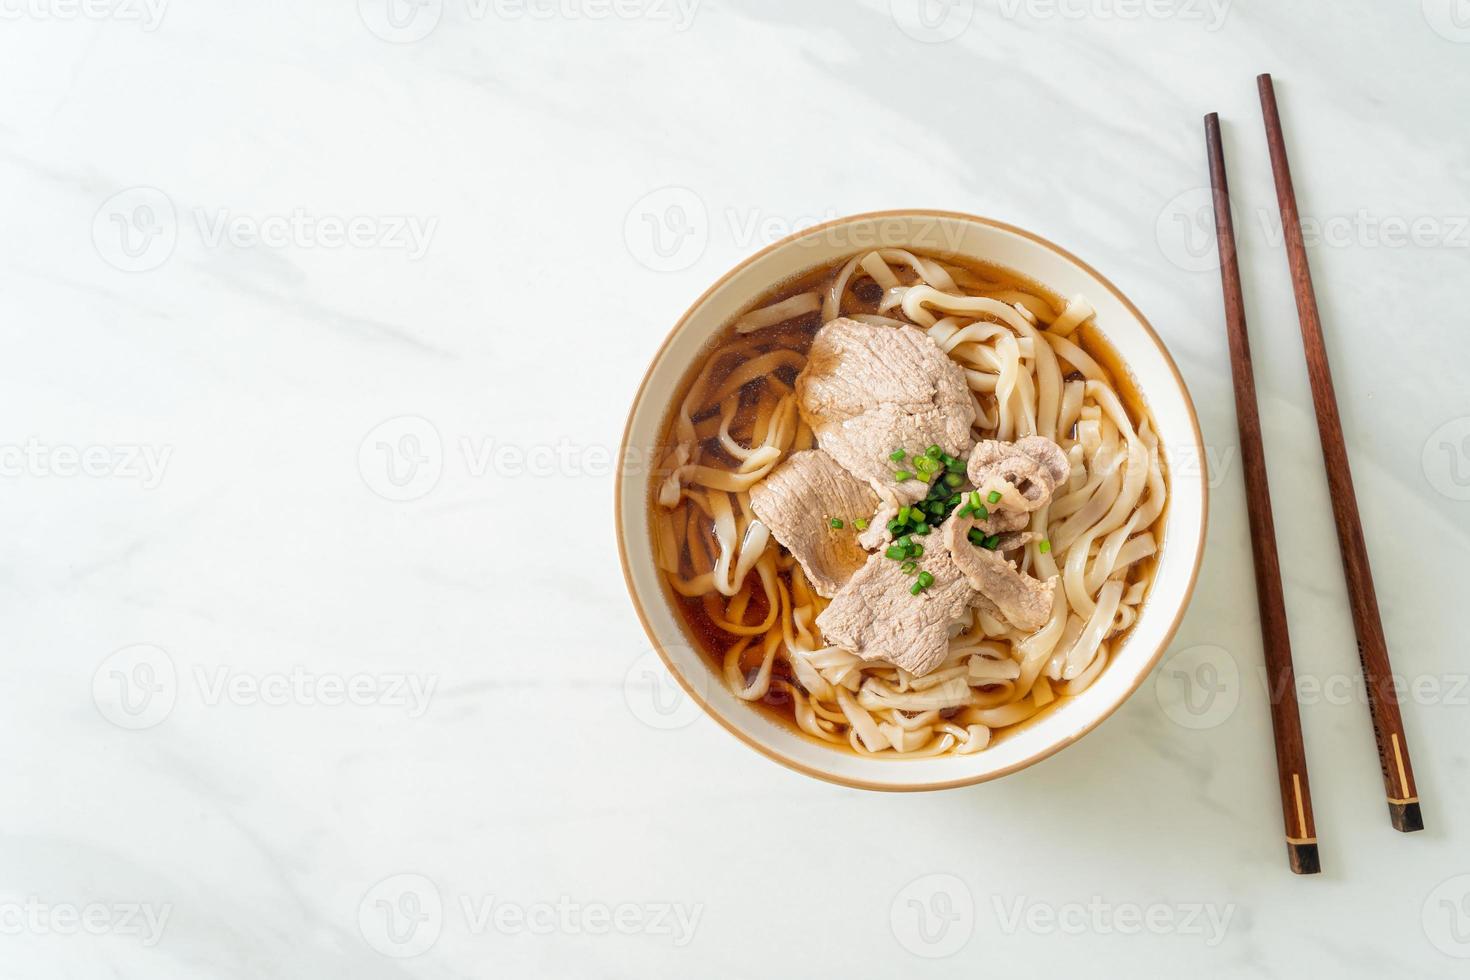 nouilles udon maison au porc dans une soupe de soja ou de shoyu photo